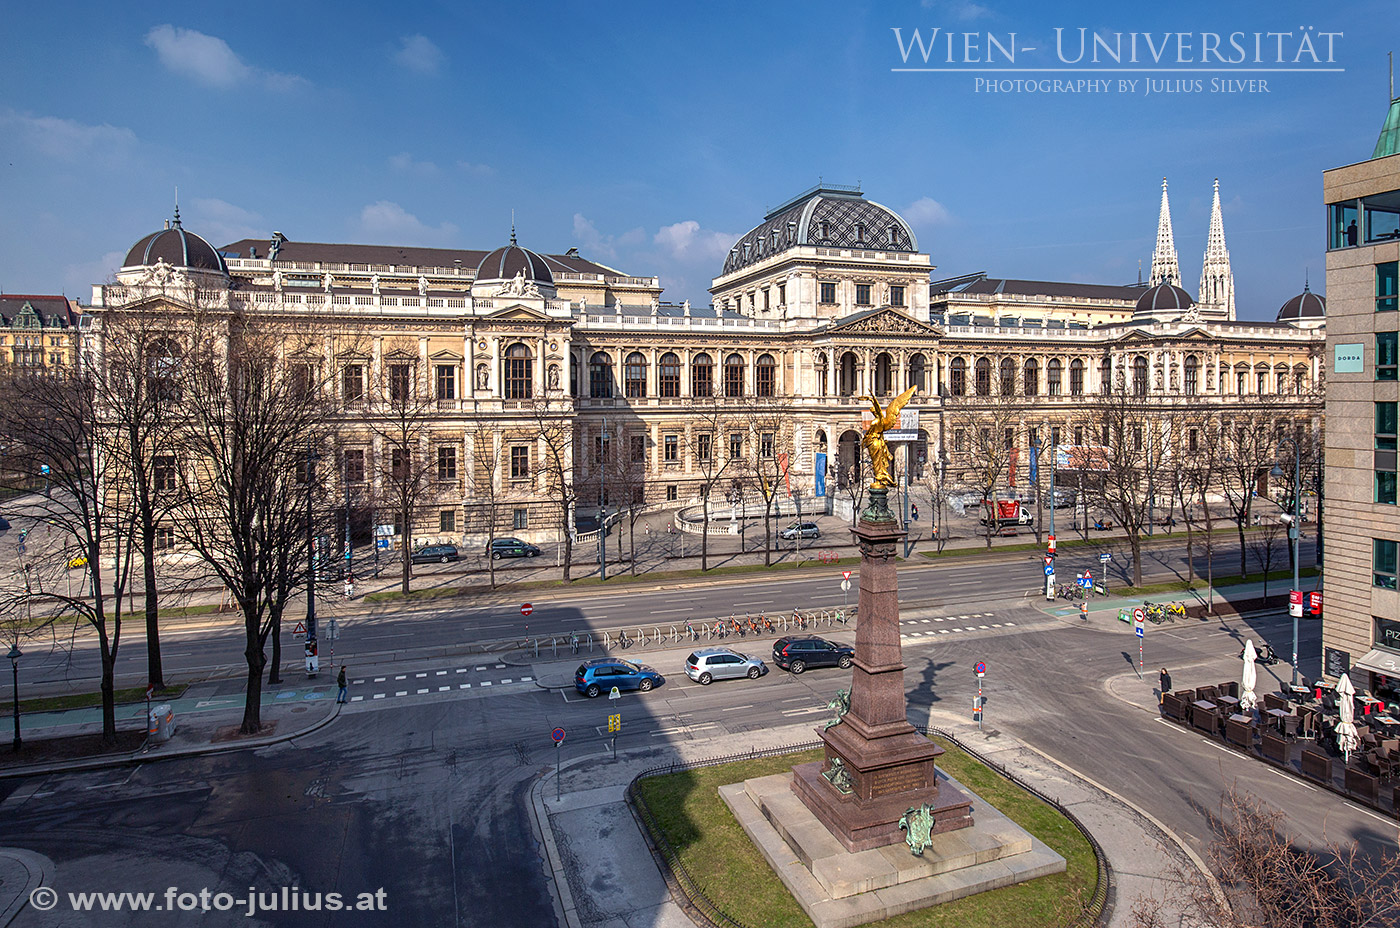 W6774a_Universitat_Wien.jpg, 584kB